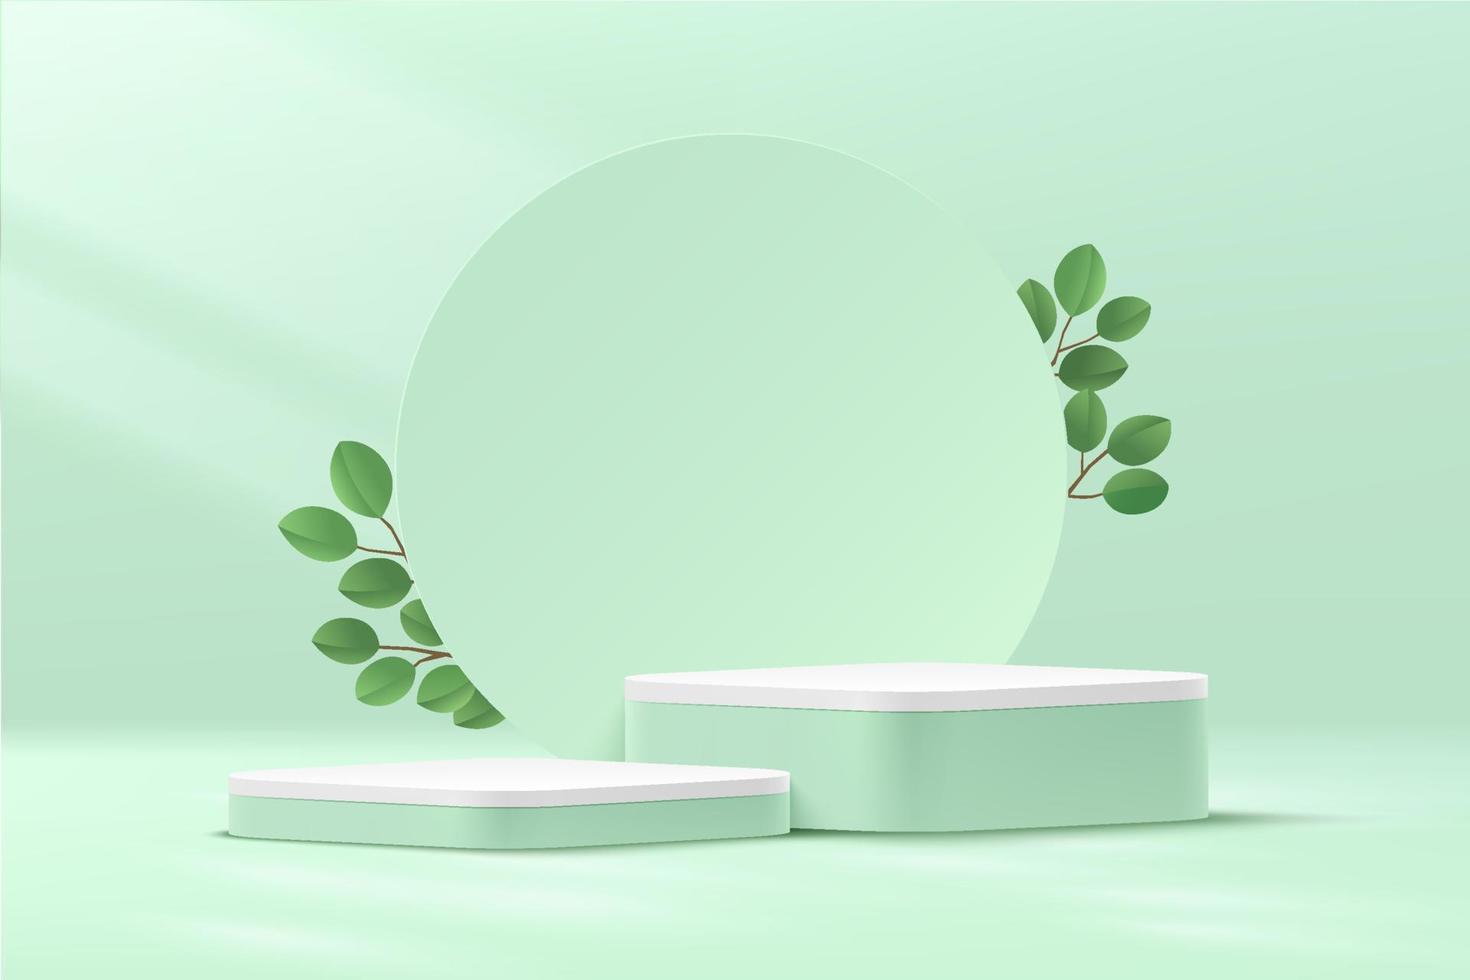 abstracte groene en witte ronde hoek kubus platform podium. cirkel achtergrond en groen blad. pastel lichtgroene minimale wandscène. vector rendering 3D-vorm voor cosmetische product display presentatie.